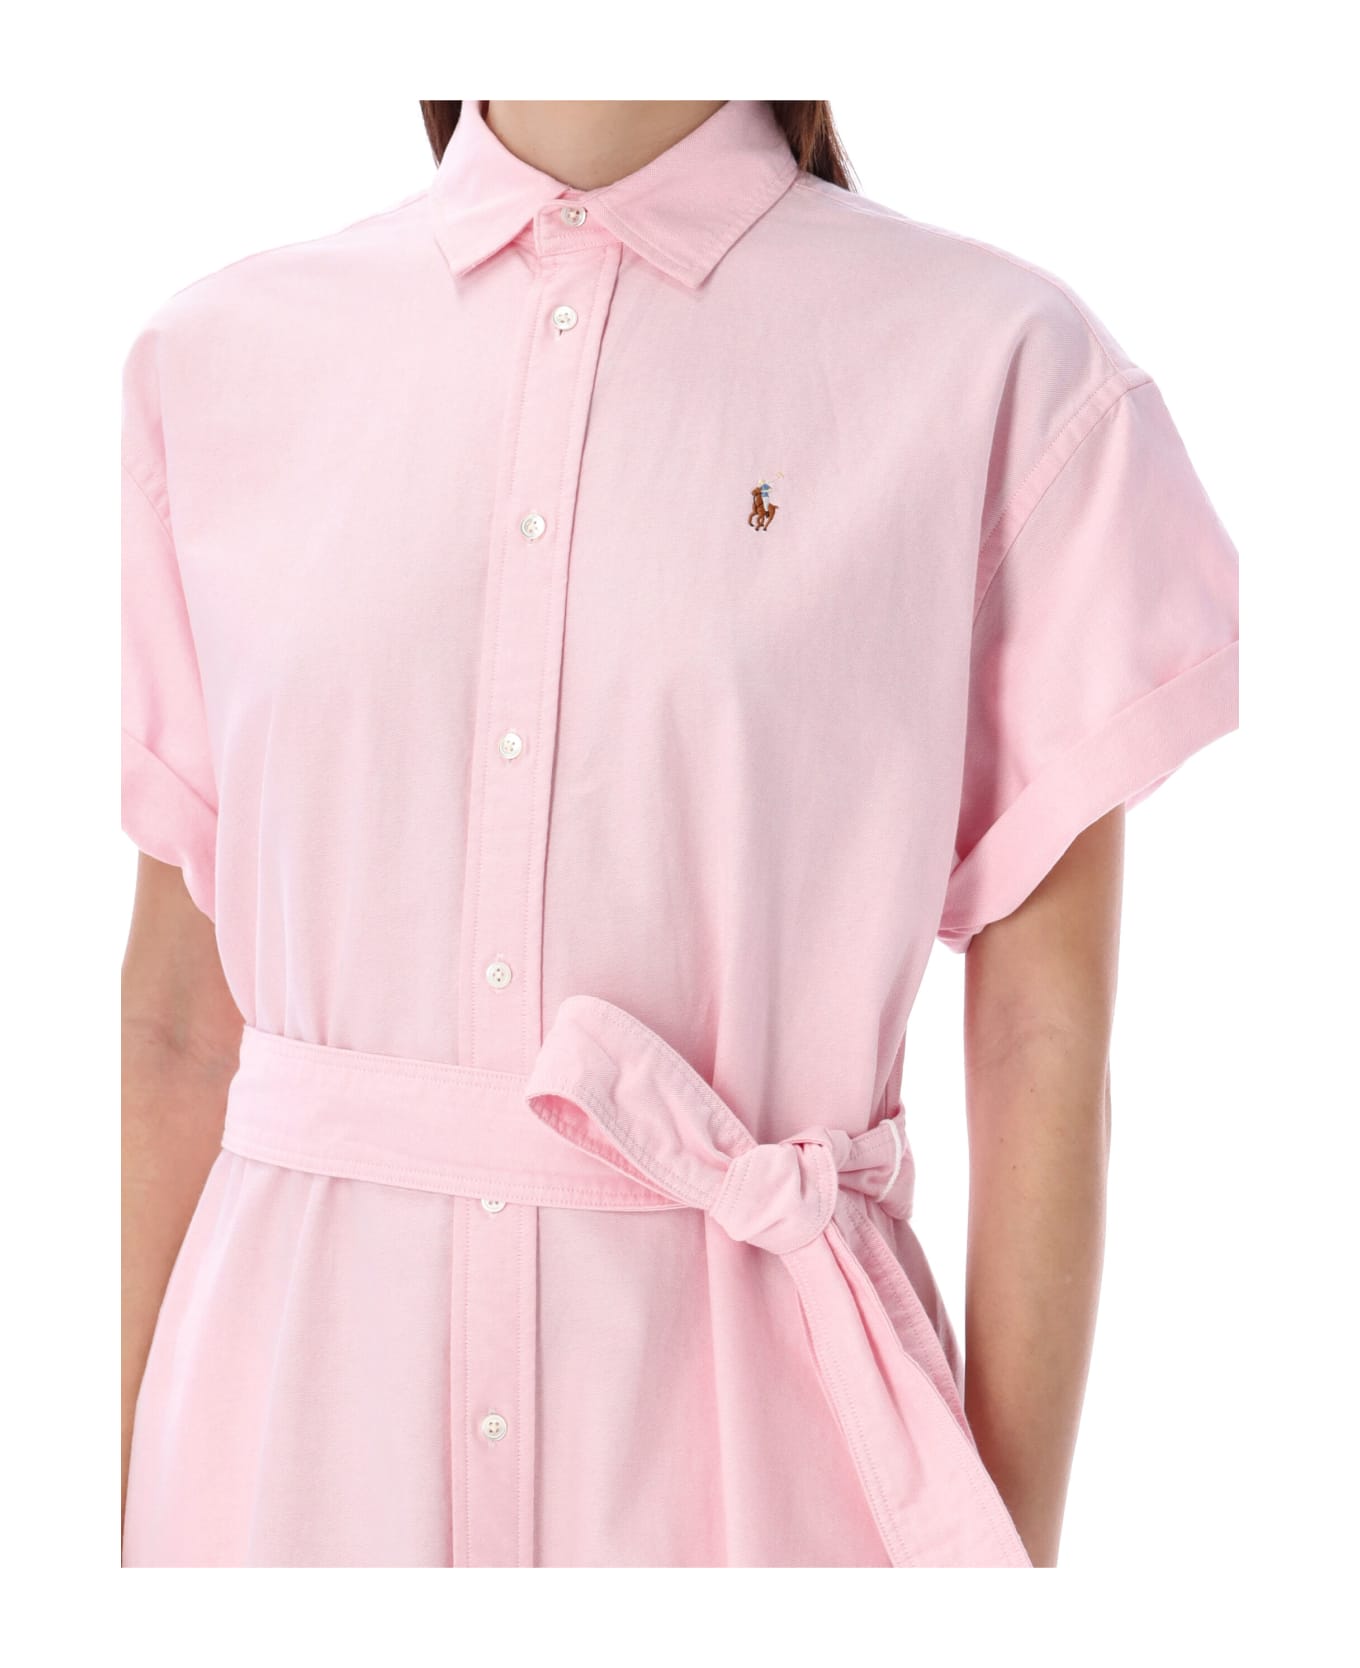 Polo Ralph Lauren Belted Oxford Shirtdress - BATH PINK